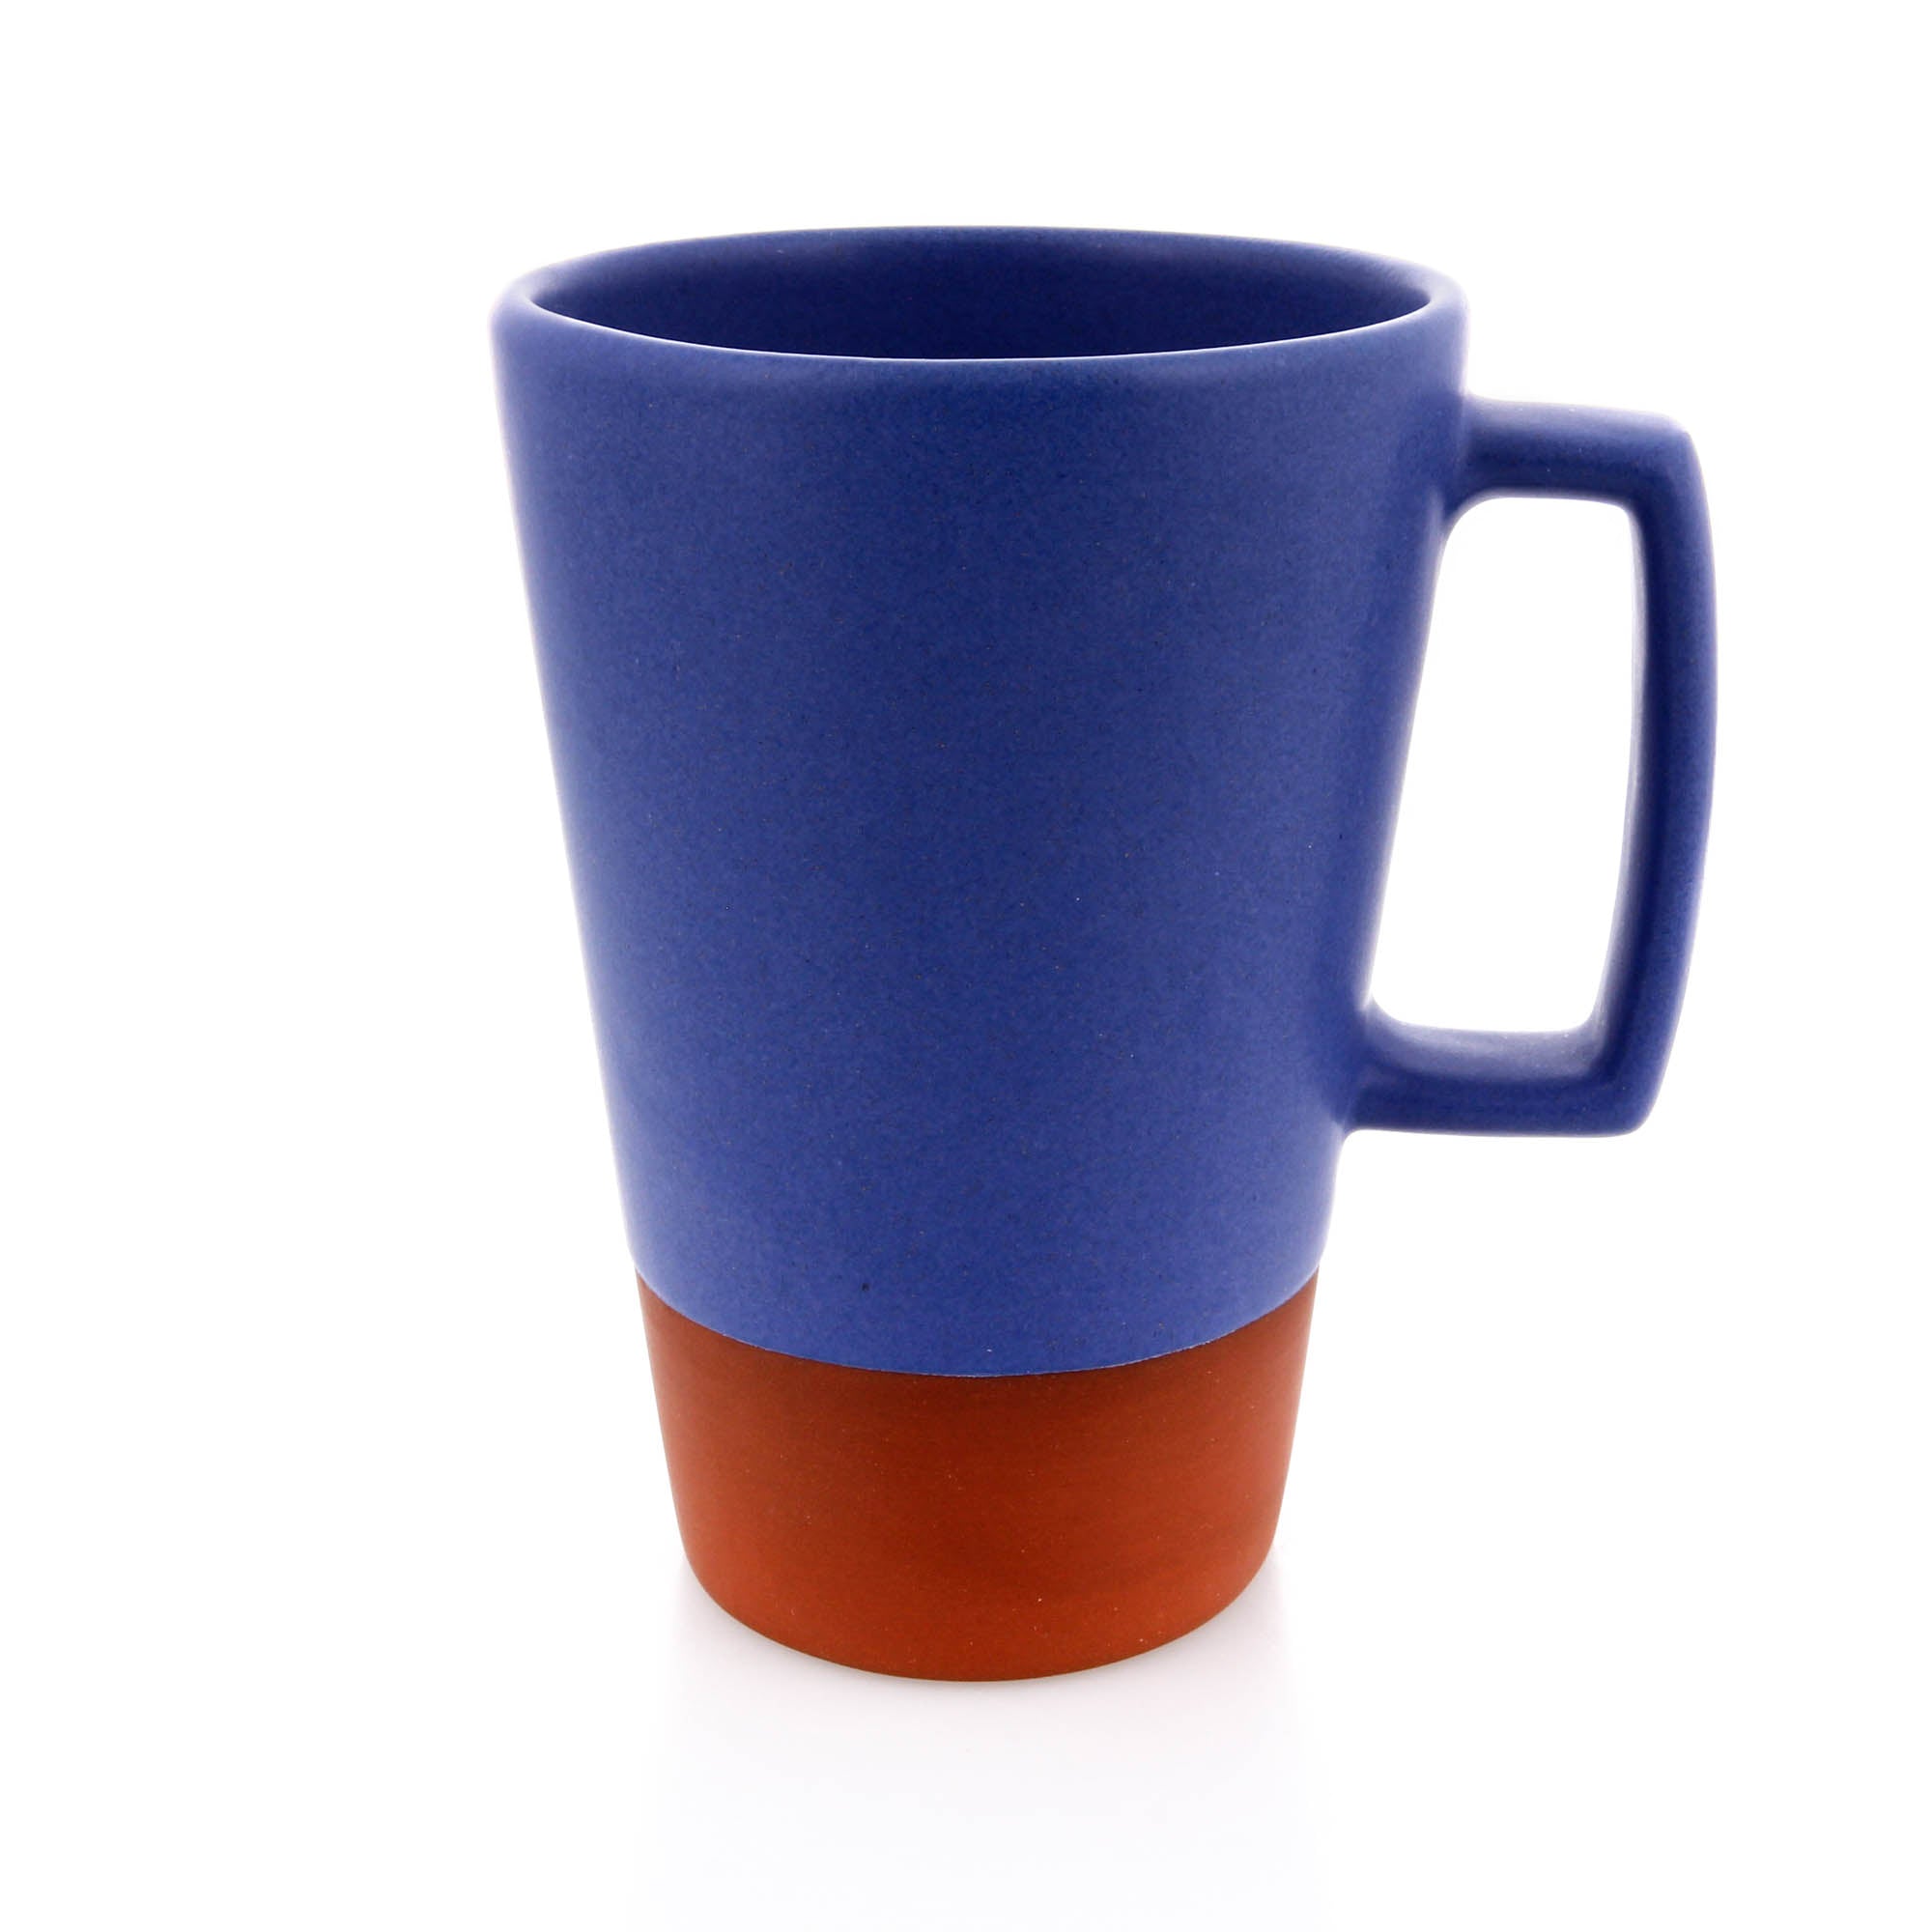 Paul Eshelman, Tall Mug in Dark Blue, Ceramics